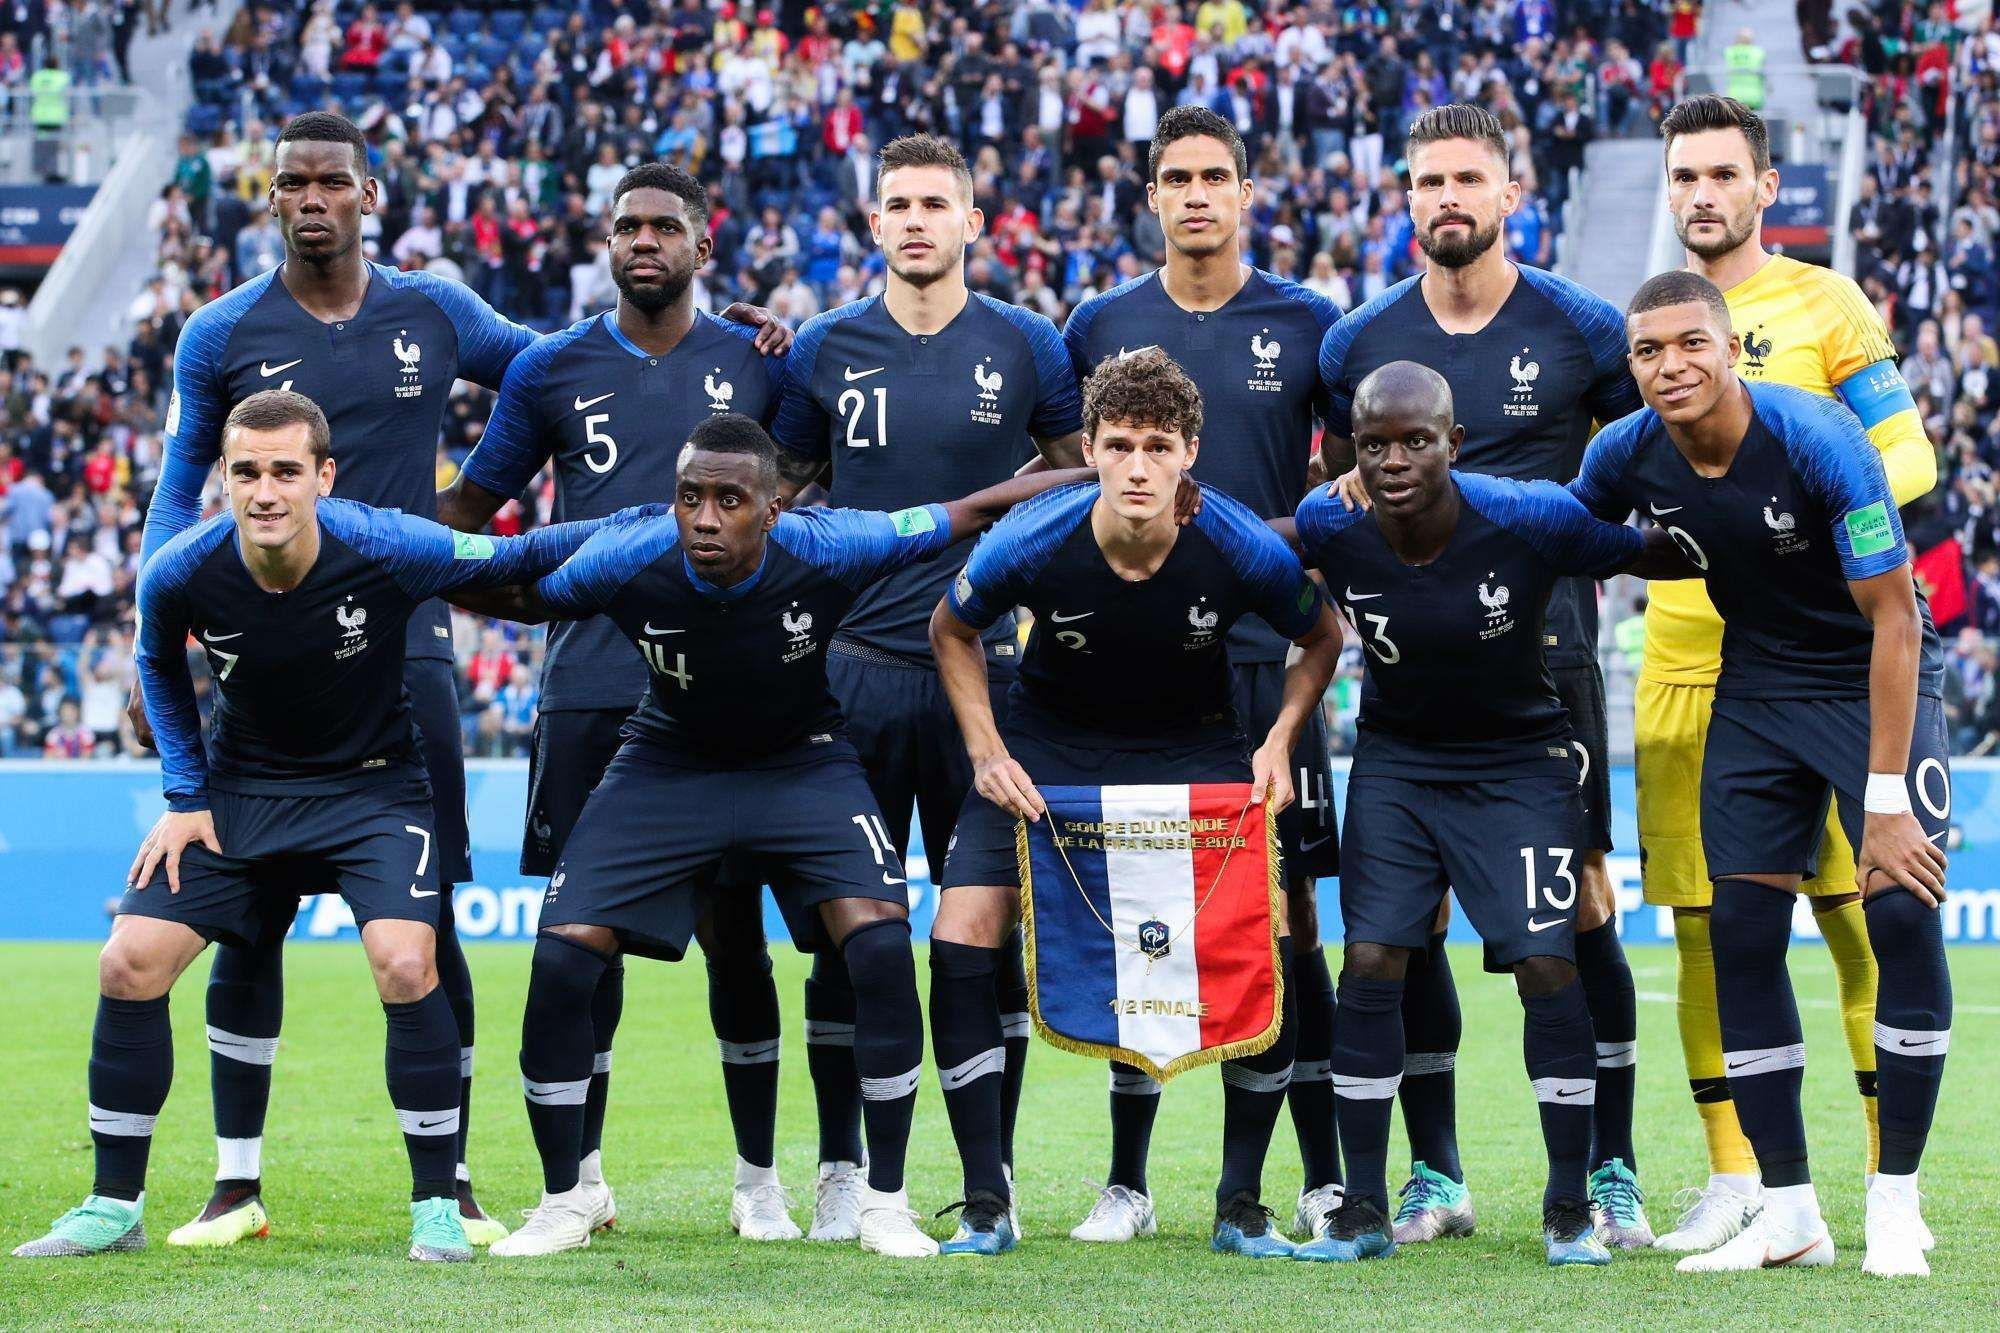 法国足球队,法国世界杯,主帅,小组赛,本泽马